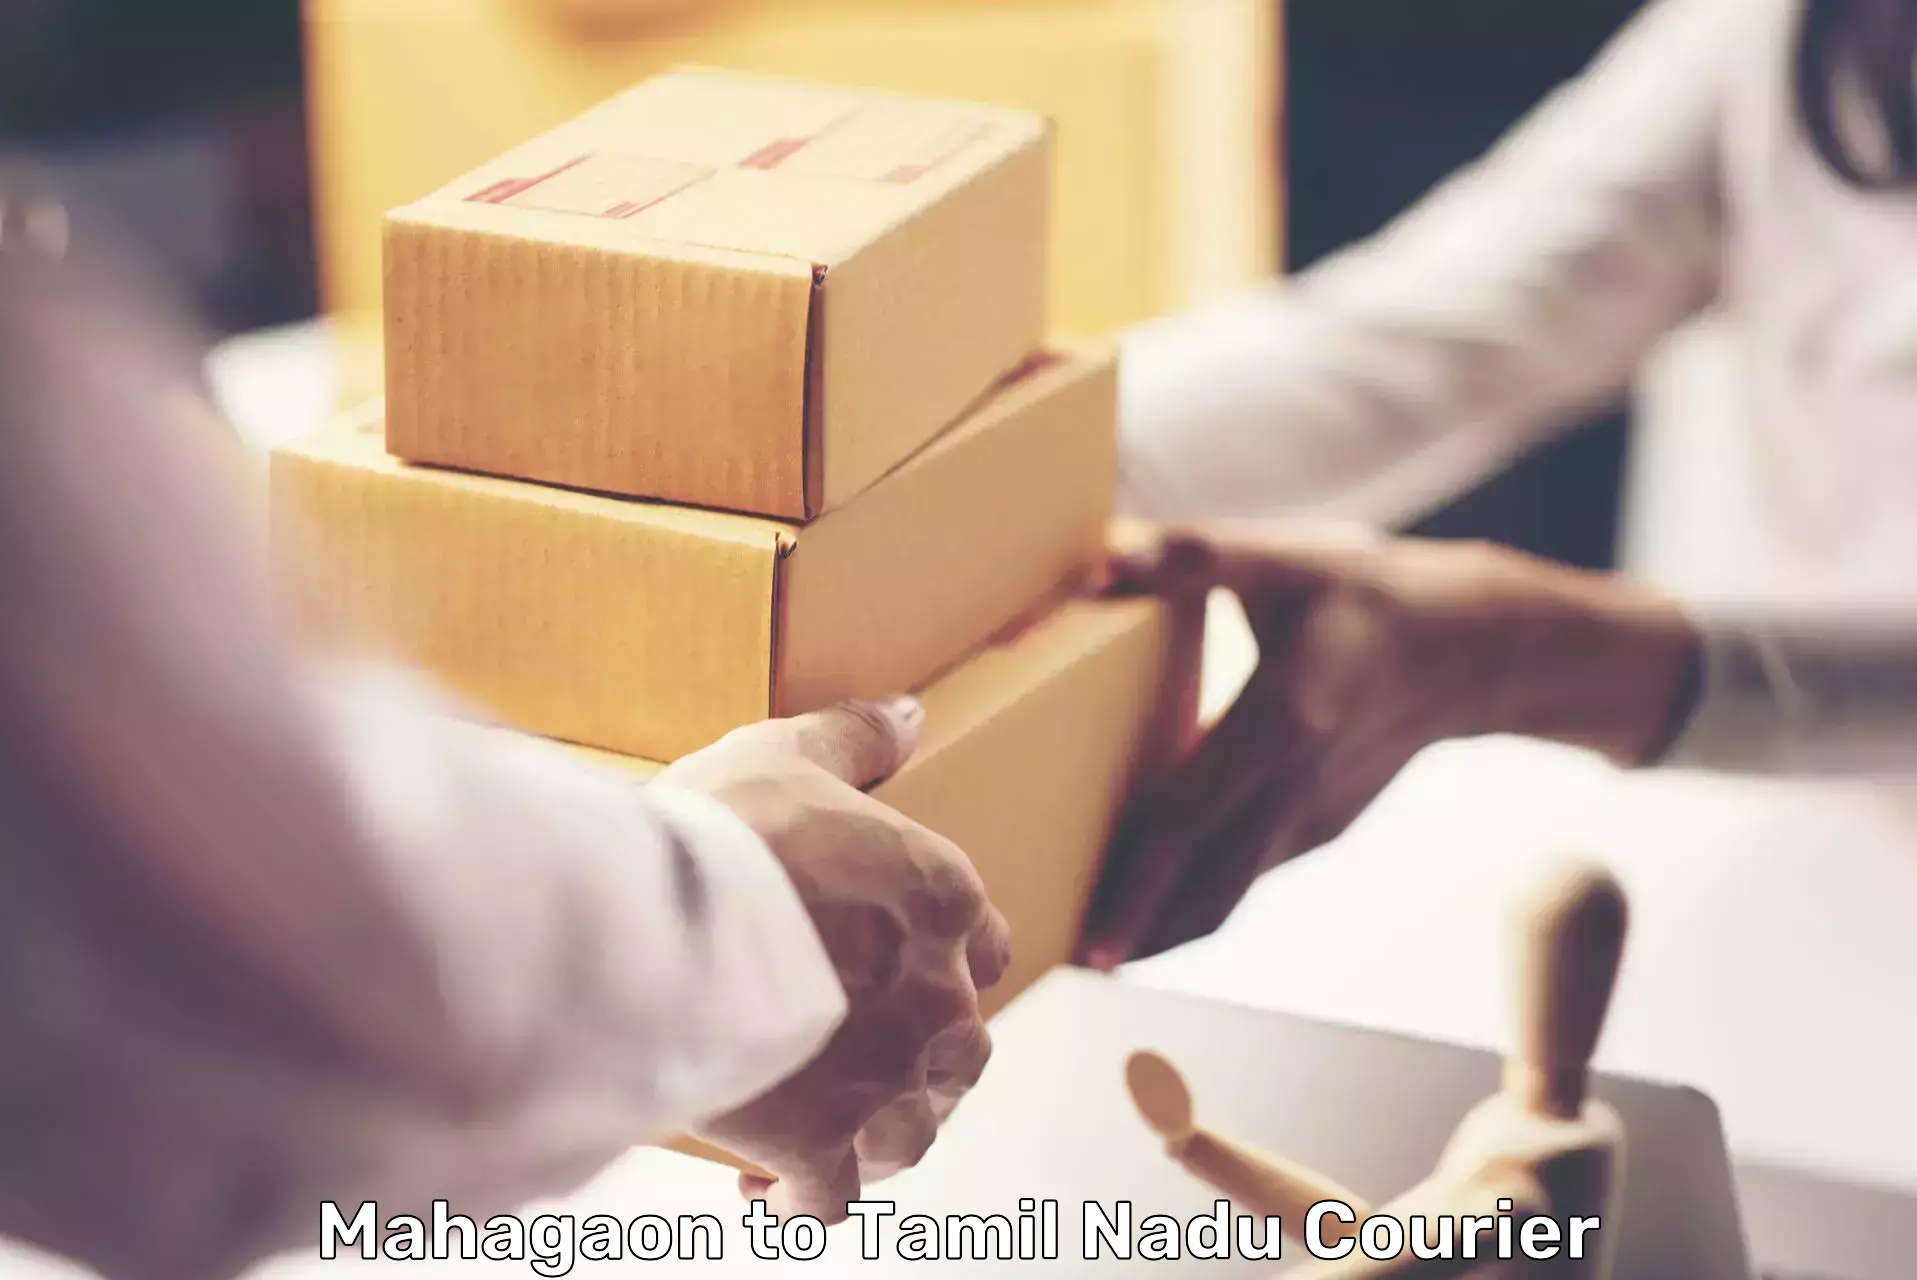 Fragile item shipping Mahagaon to Tiruchi